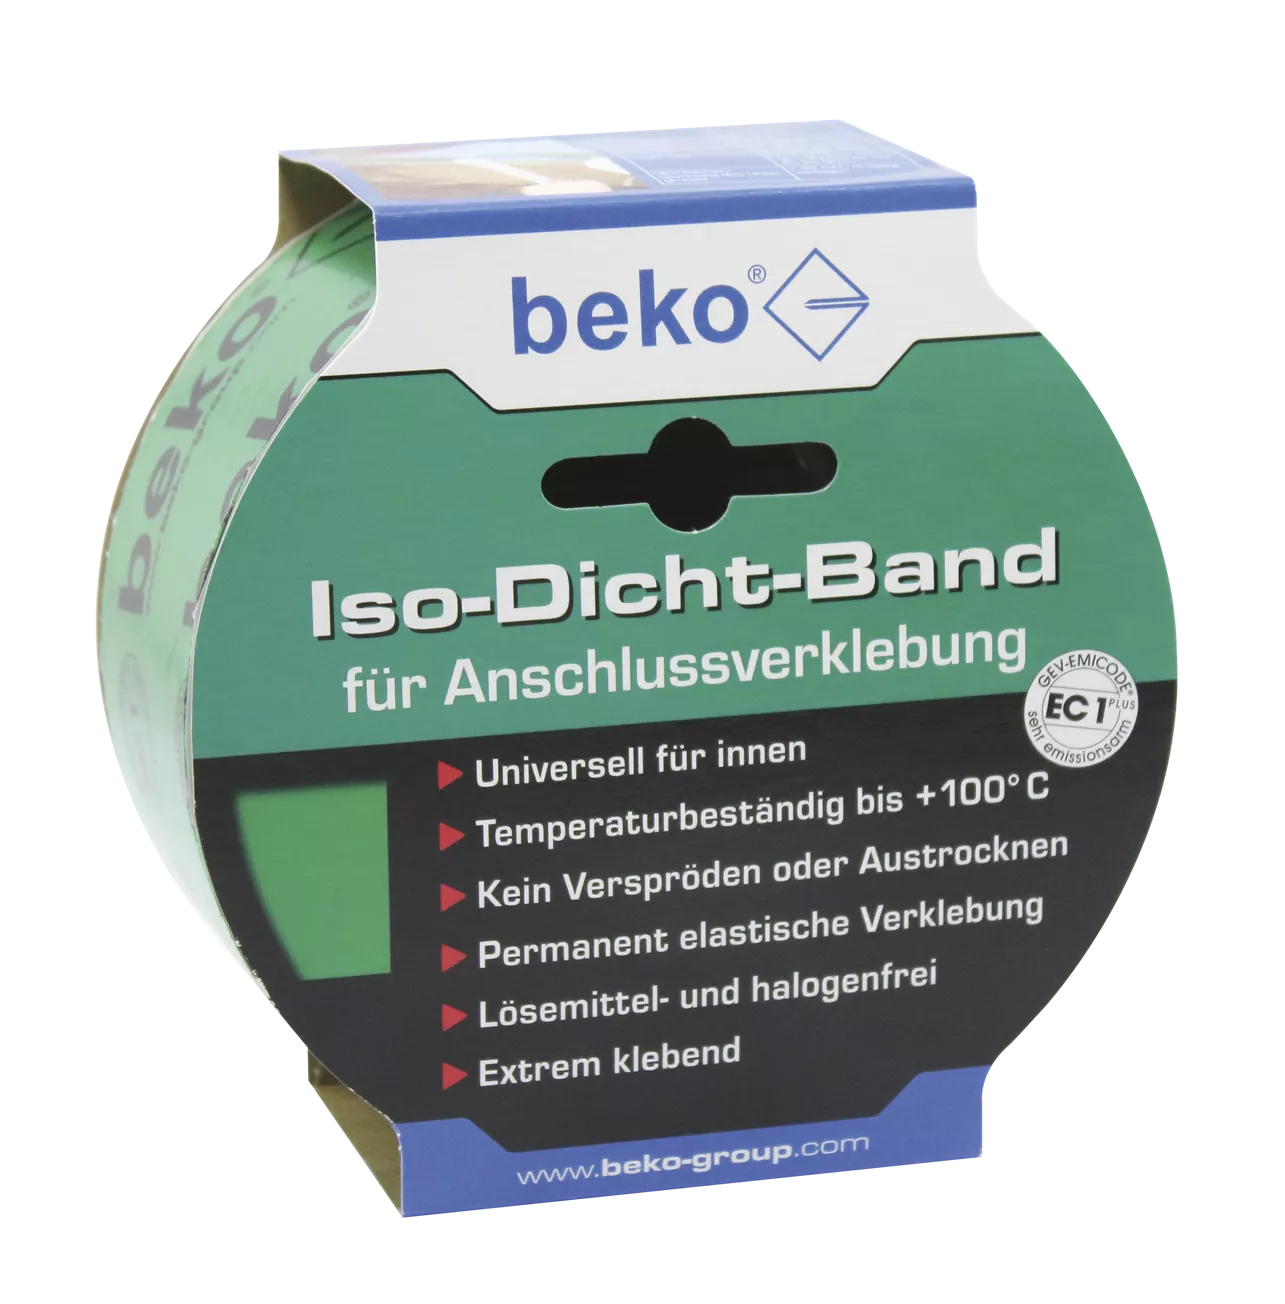 beko Iso-Dicht-Band 60 mm x 25 m GRÜN, für Anschlußverklebung